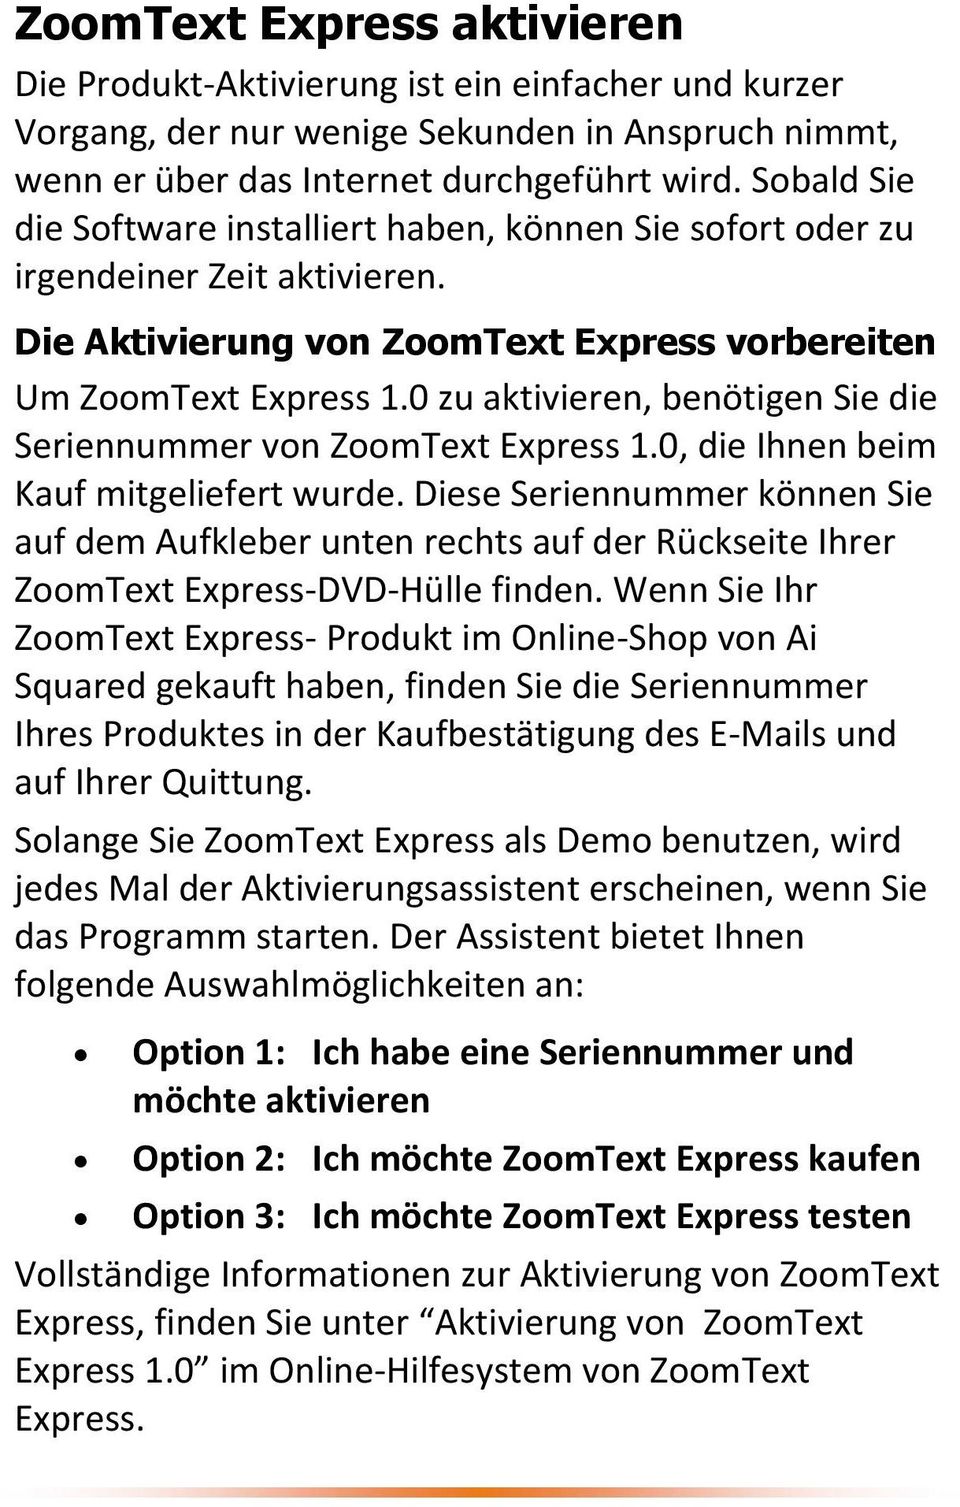 0 zu aktivieren, benötigen Sie die Seriennummer von ZoomText Express 1.0, die Ihnen beim Kauf mitgeliefert wurde.